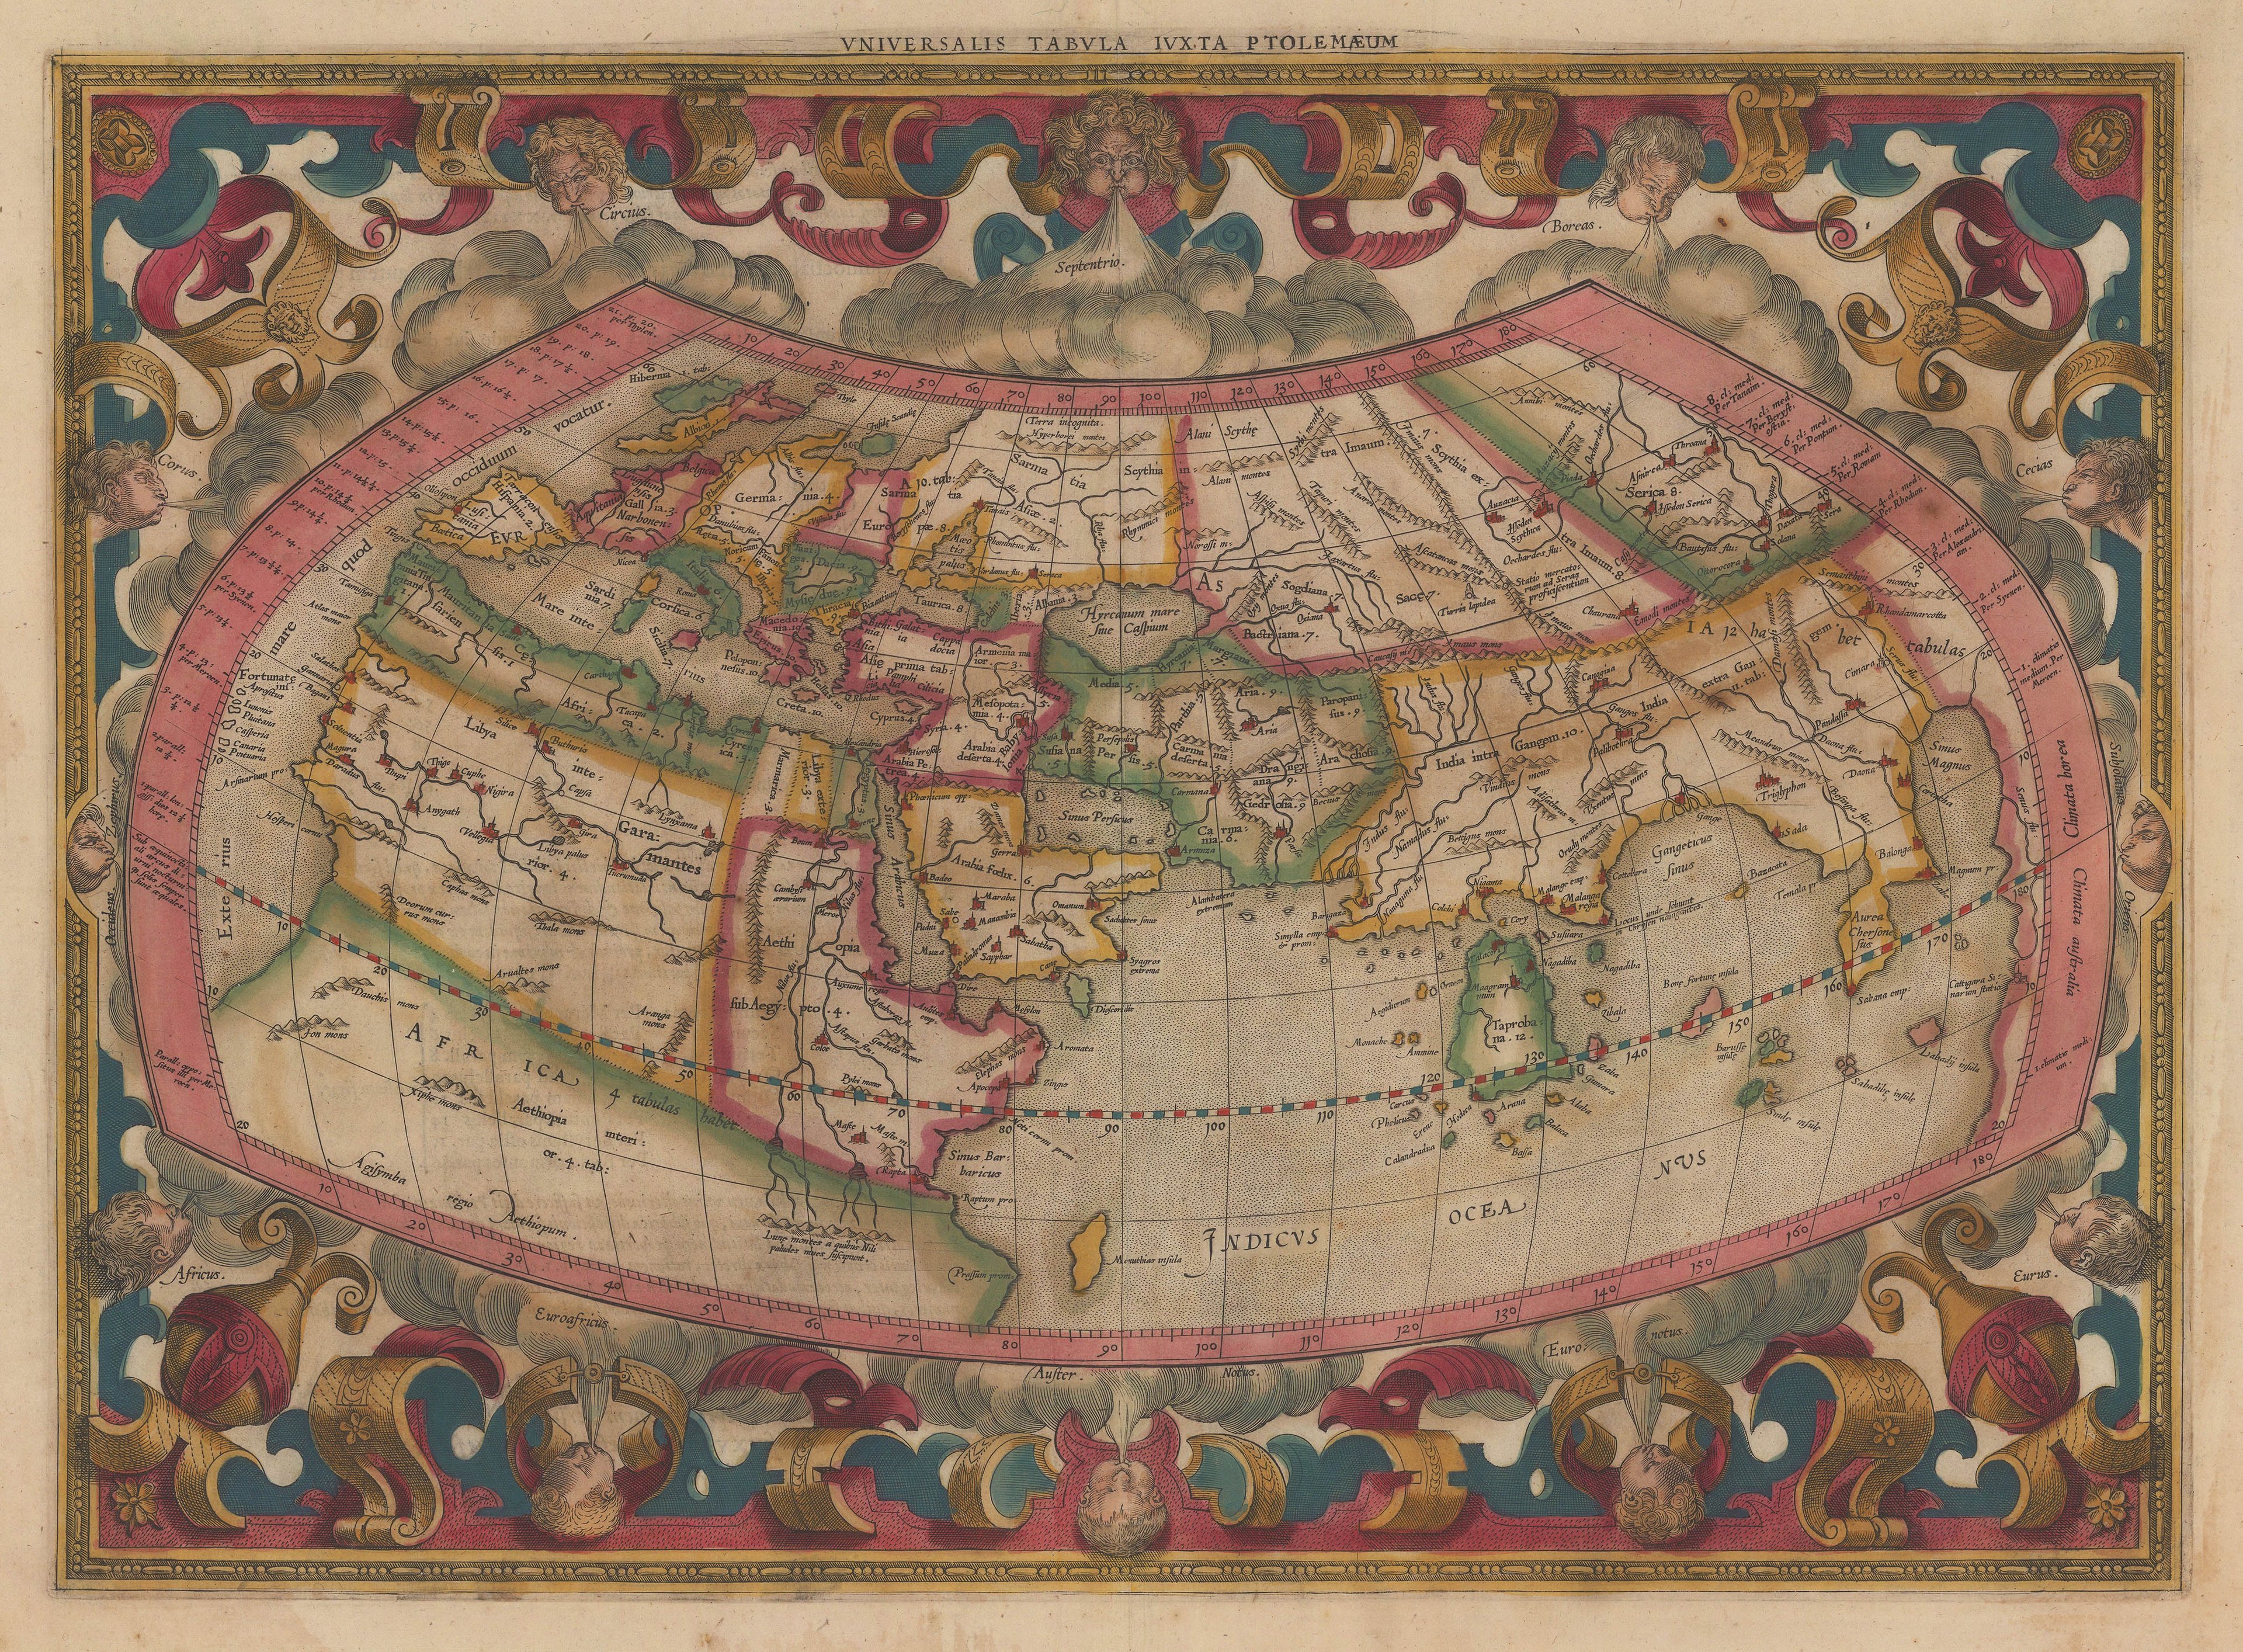 Gerard Mercator, Universalis Tabula Iuxta Ptolemaeum, c.1600